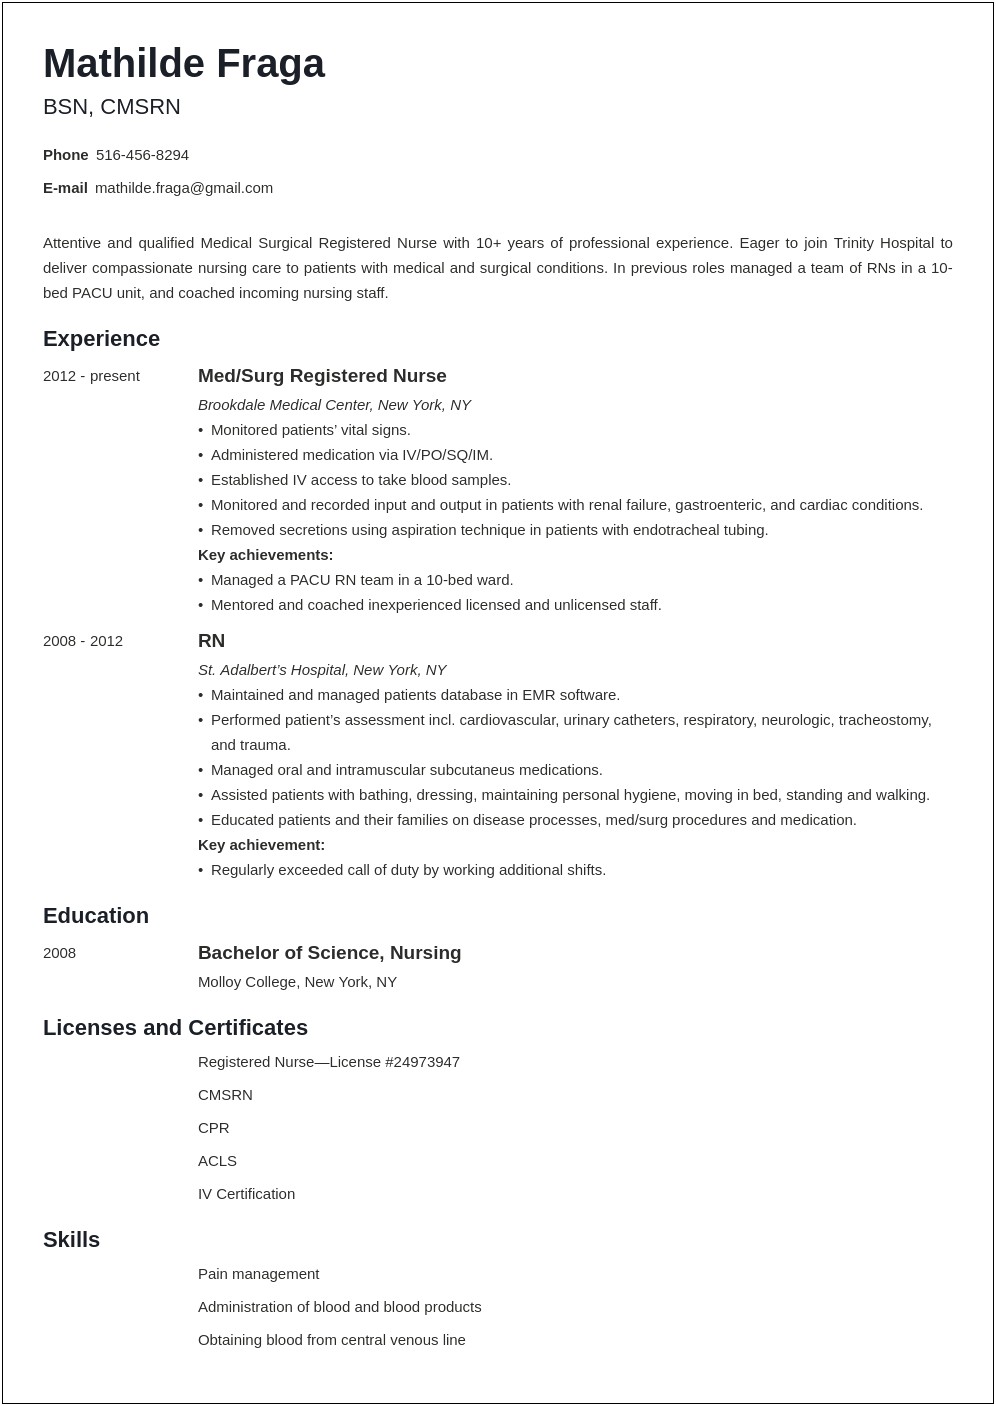 Resume Description For Med Surg Rn